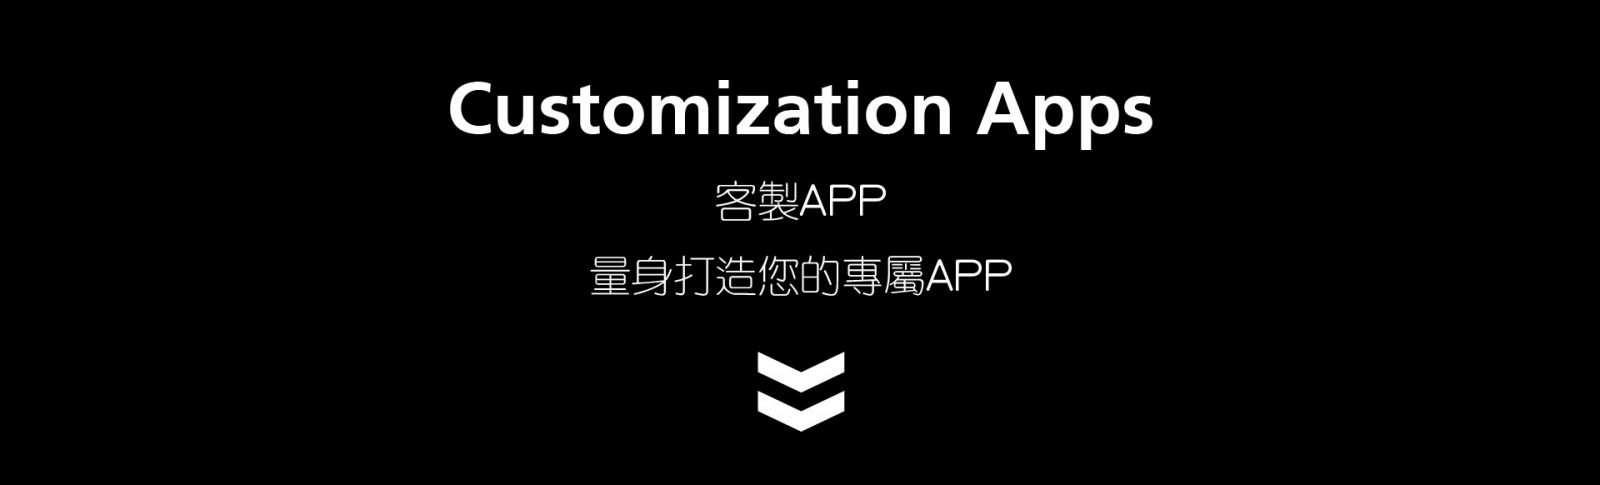 客製APP  Customization Apps  量身打造您的專屬APP 專業客製化APP程式開發 android與iOS(iPhone/ipad) APP程式設計